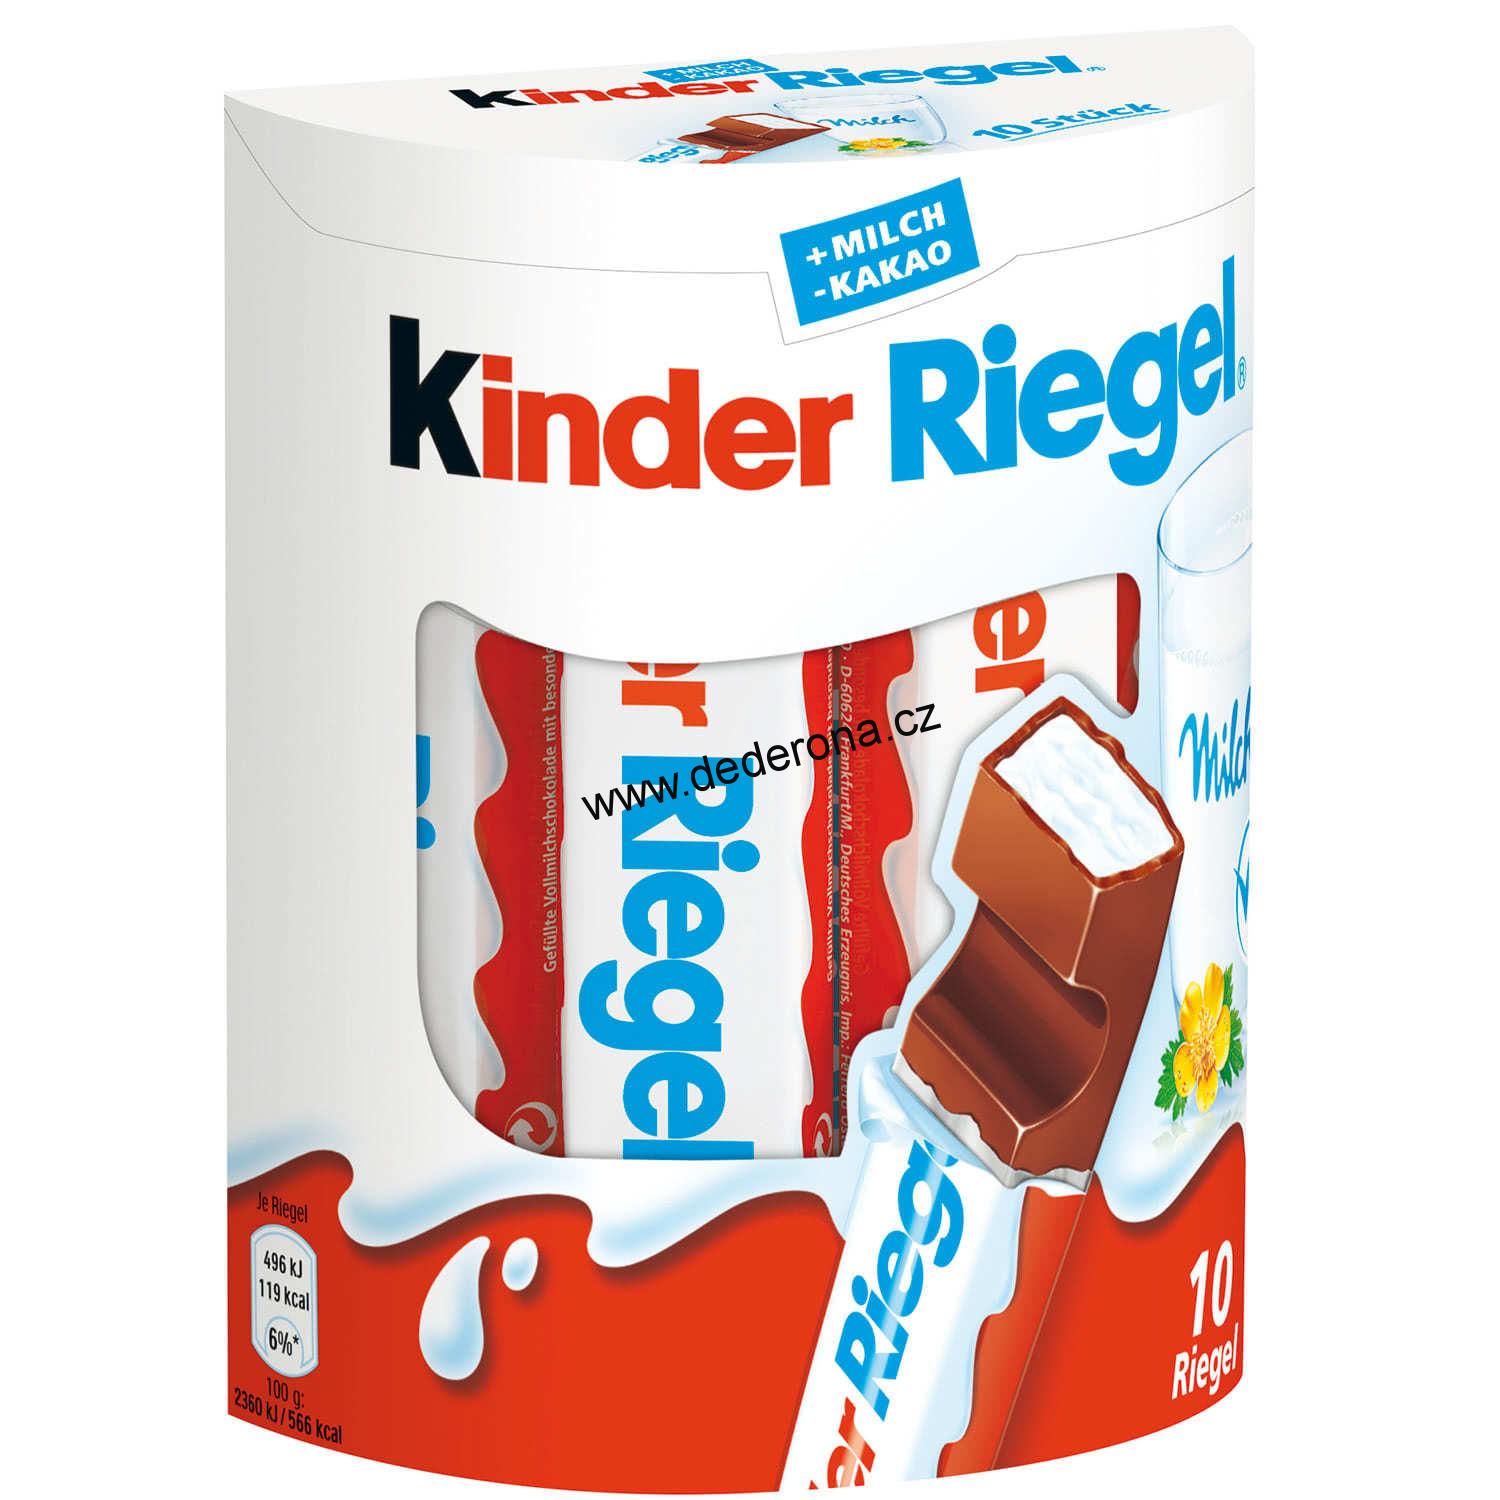 Kinder - Riegel čokoládové tyčinky 10ks 210g - Německo!